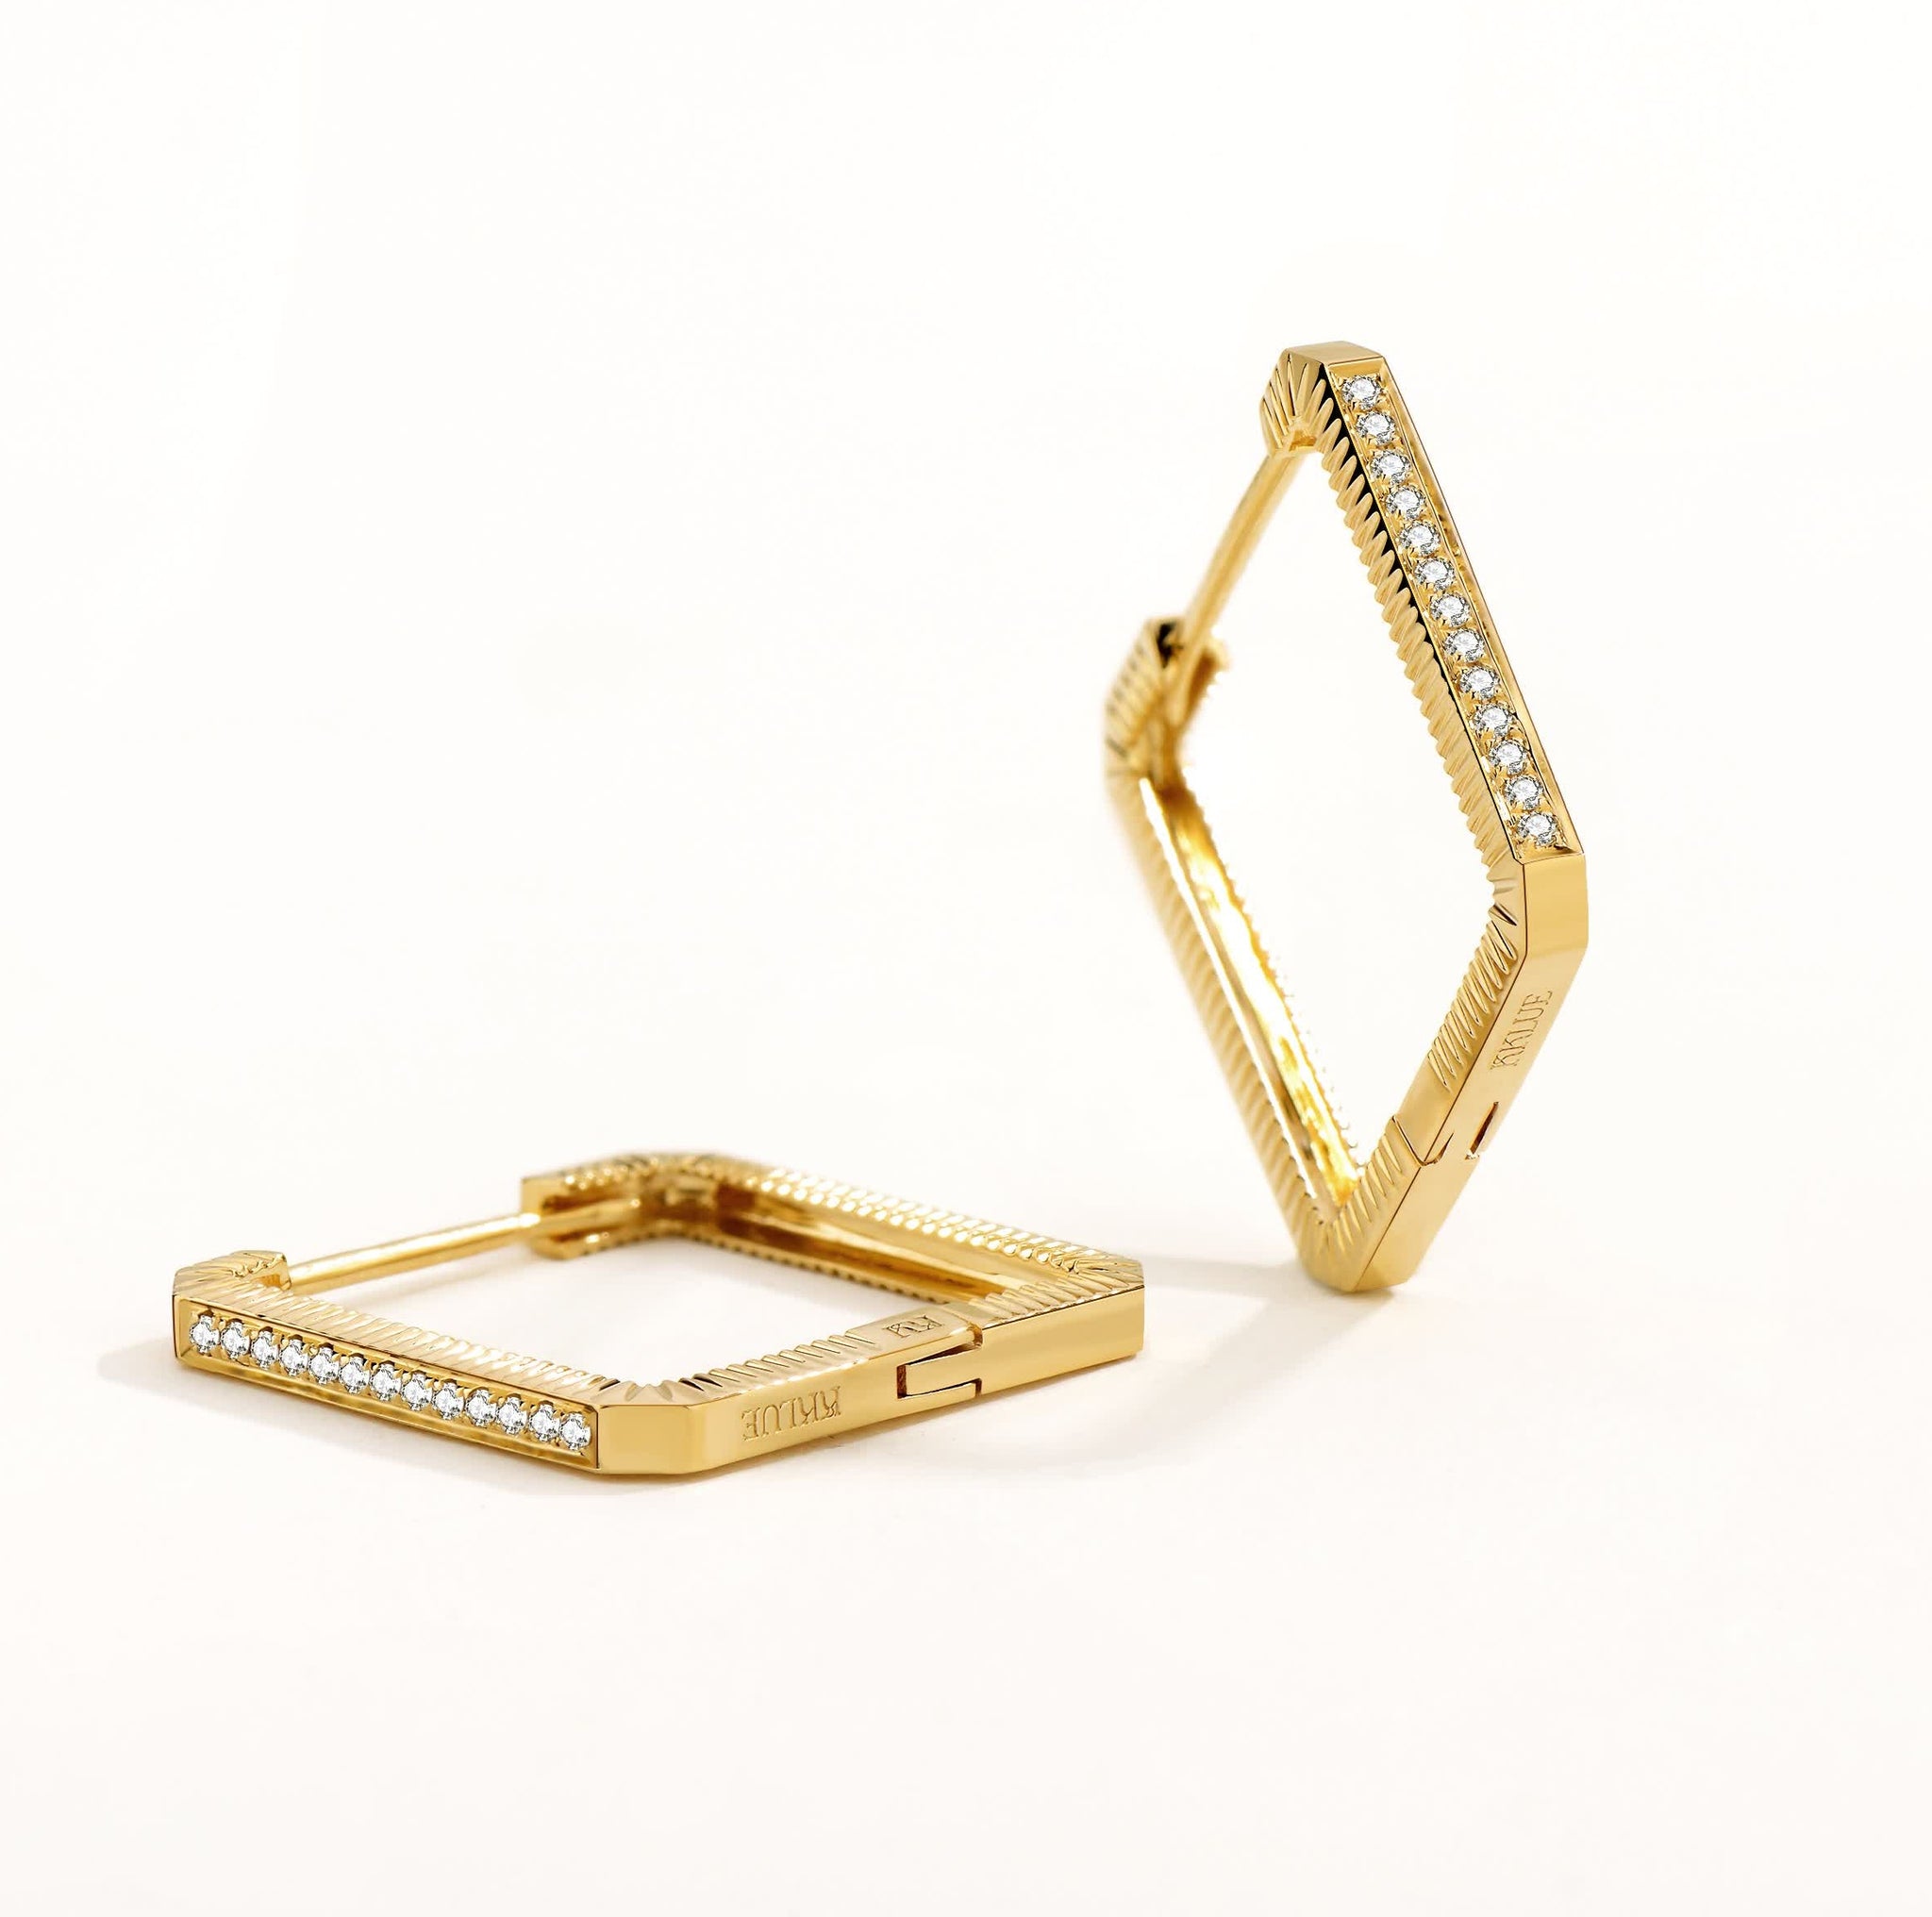 Unlock-18K Diamond Stripe Gold Earring